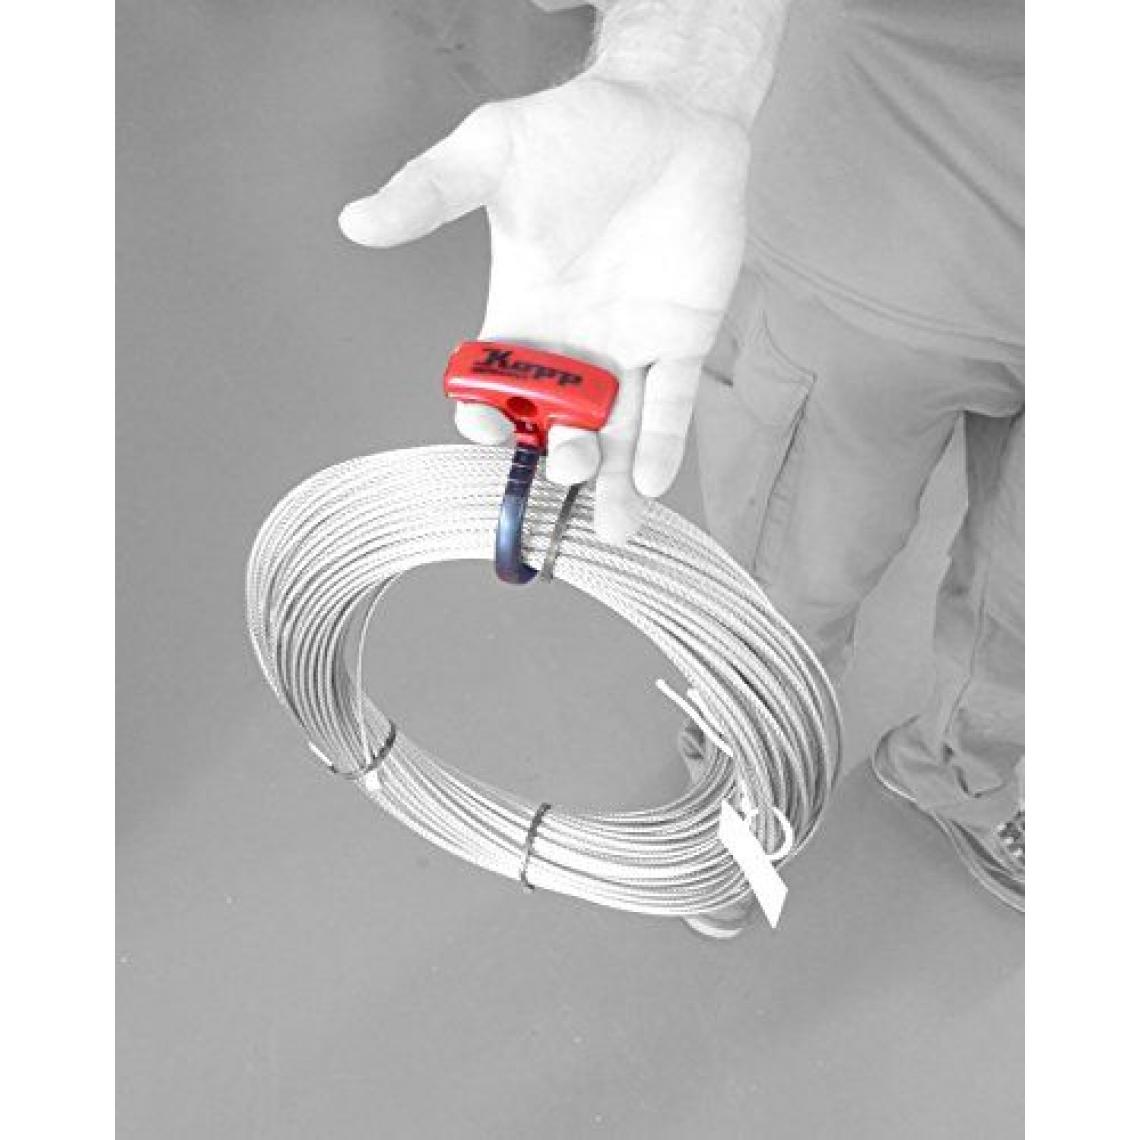 Inconnu - Serre-câble Kopp, multicolore, 372801005 - Accessoires de câblage